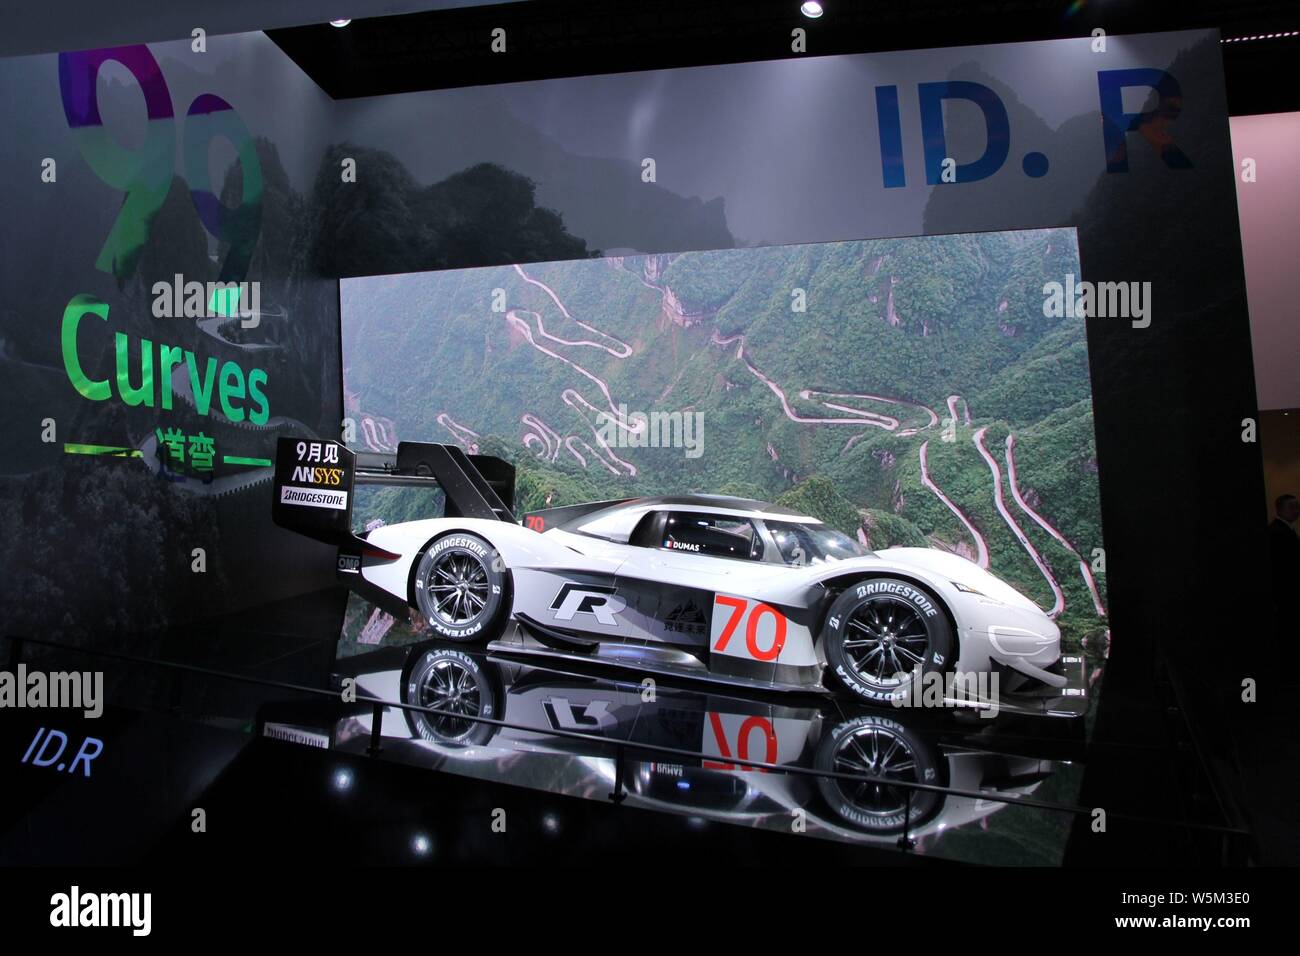 La supercar électrique Volkswagen tous est sur l'affichage lors de la 18ème Exposition de l'industrie internationale de l'Automobile de Shanghai, également connu sous le nom de Shanghai Auto Banque D'Images